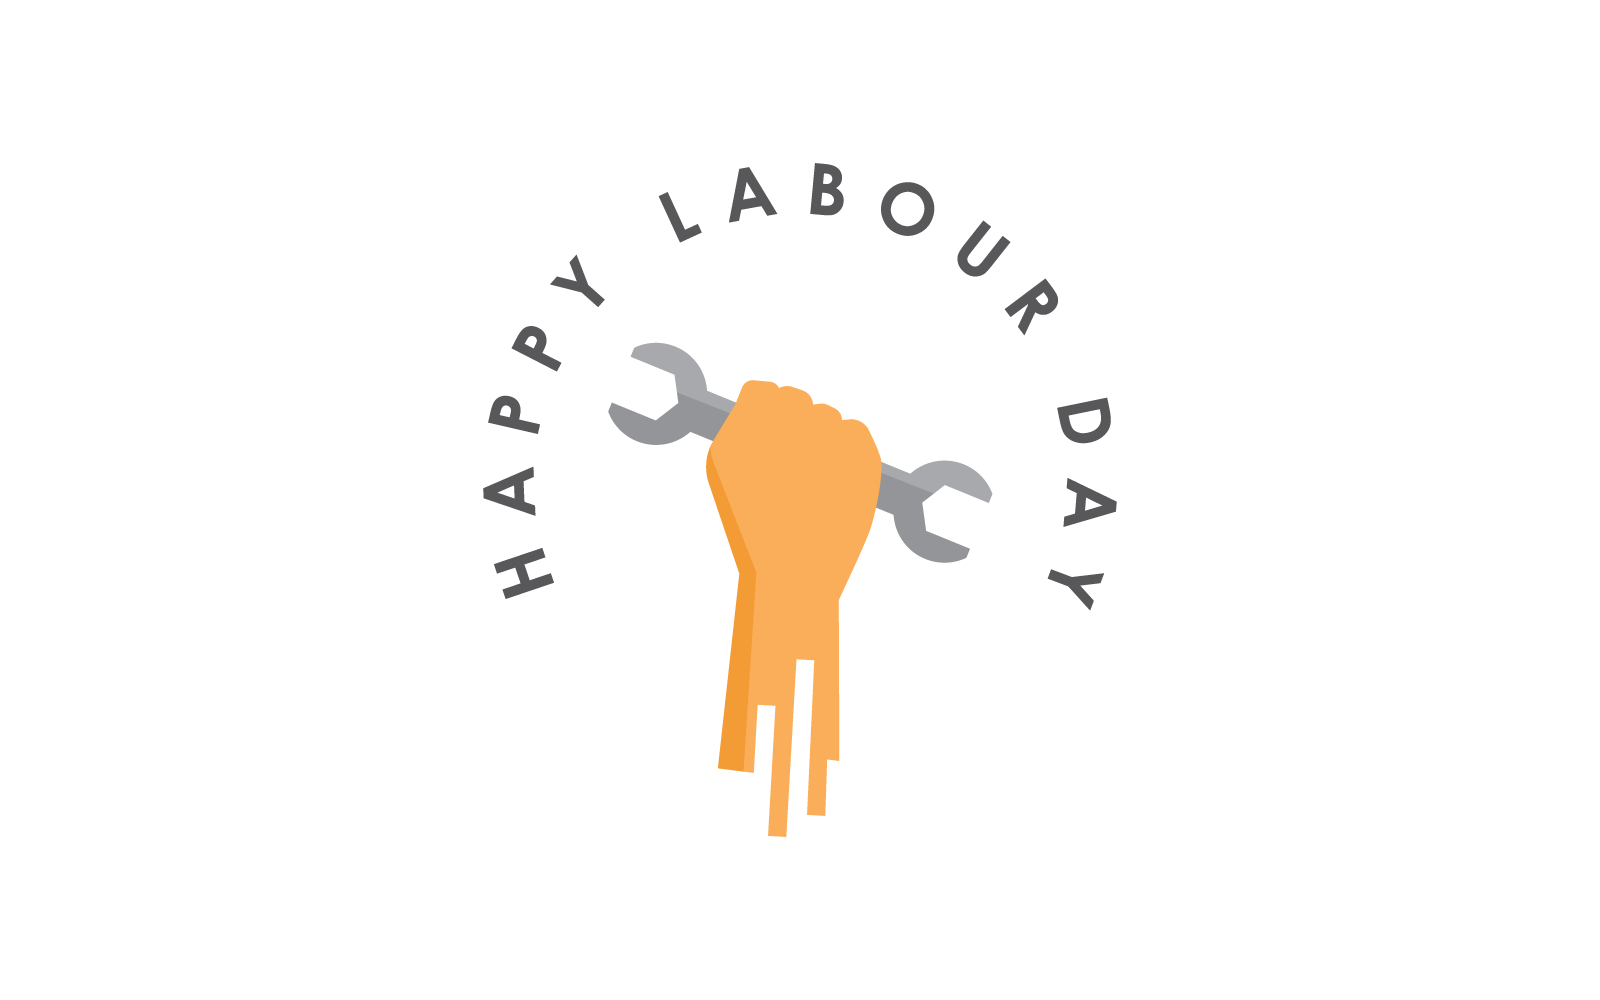 Szczęśliwego dnia pracy 1 maja symbol i logo Płaska konstrukcja